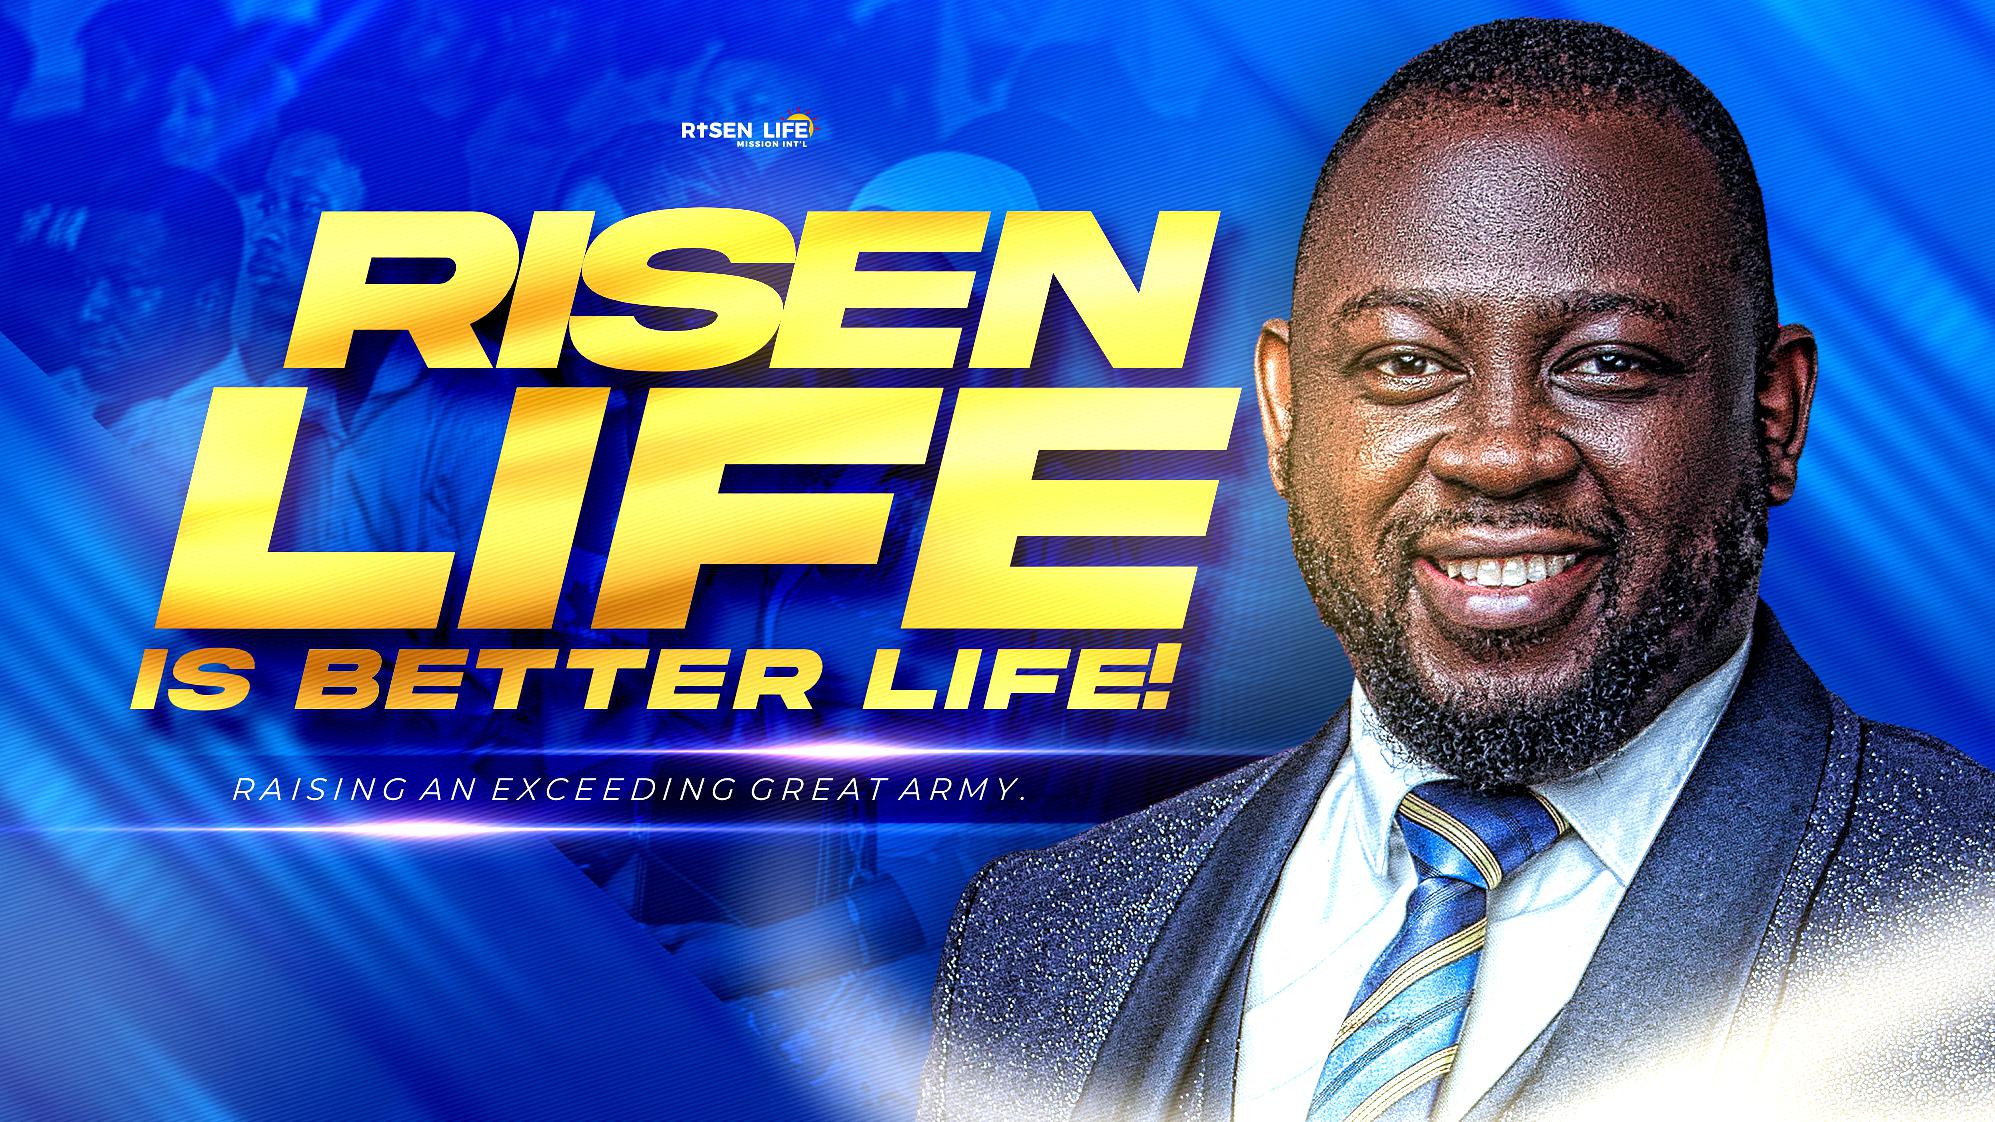 RISEN LIFE IS BETTER LIFE! Banner 1